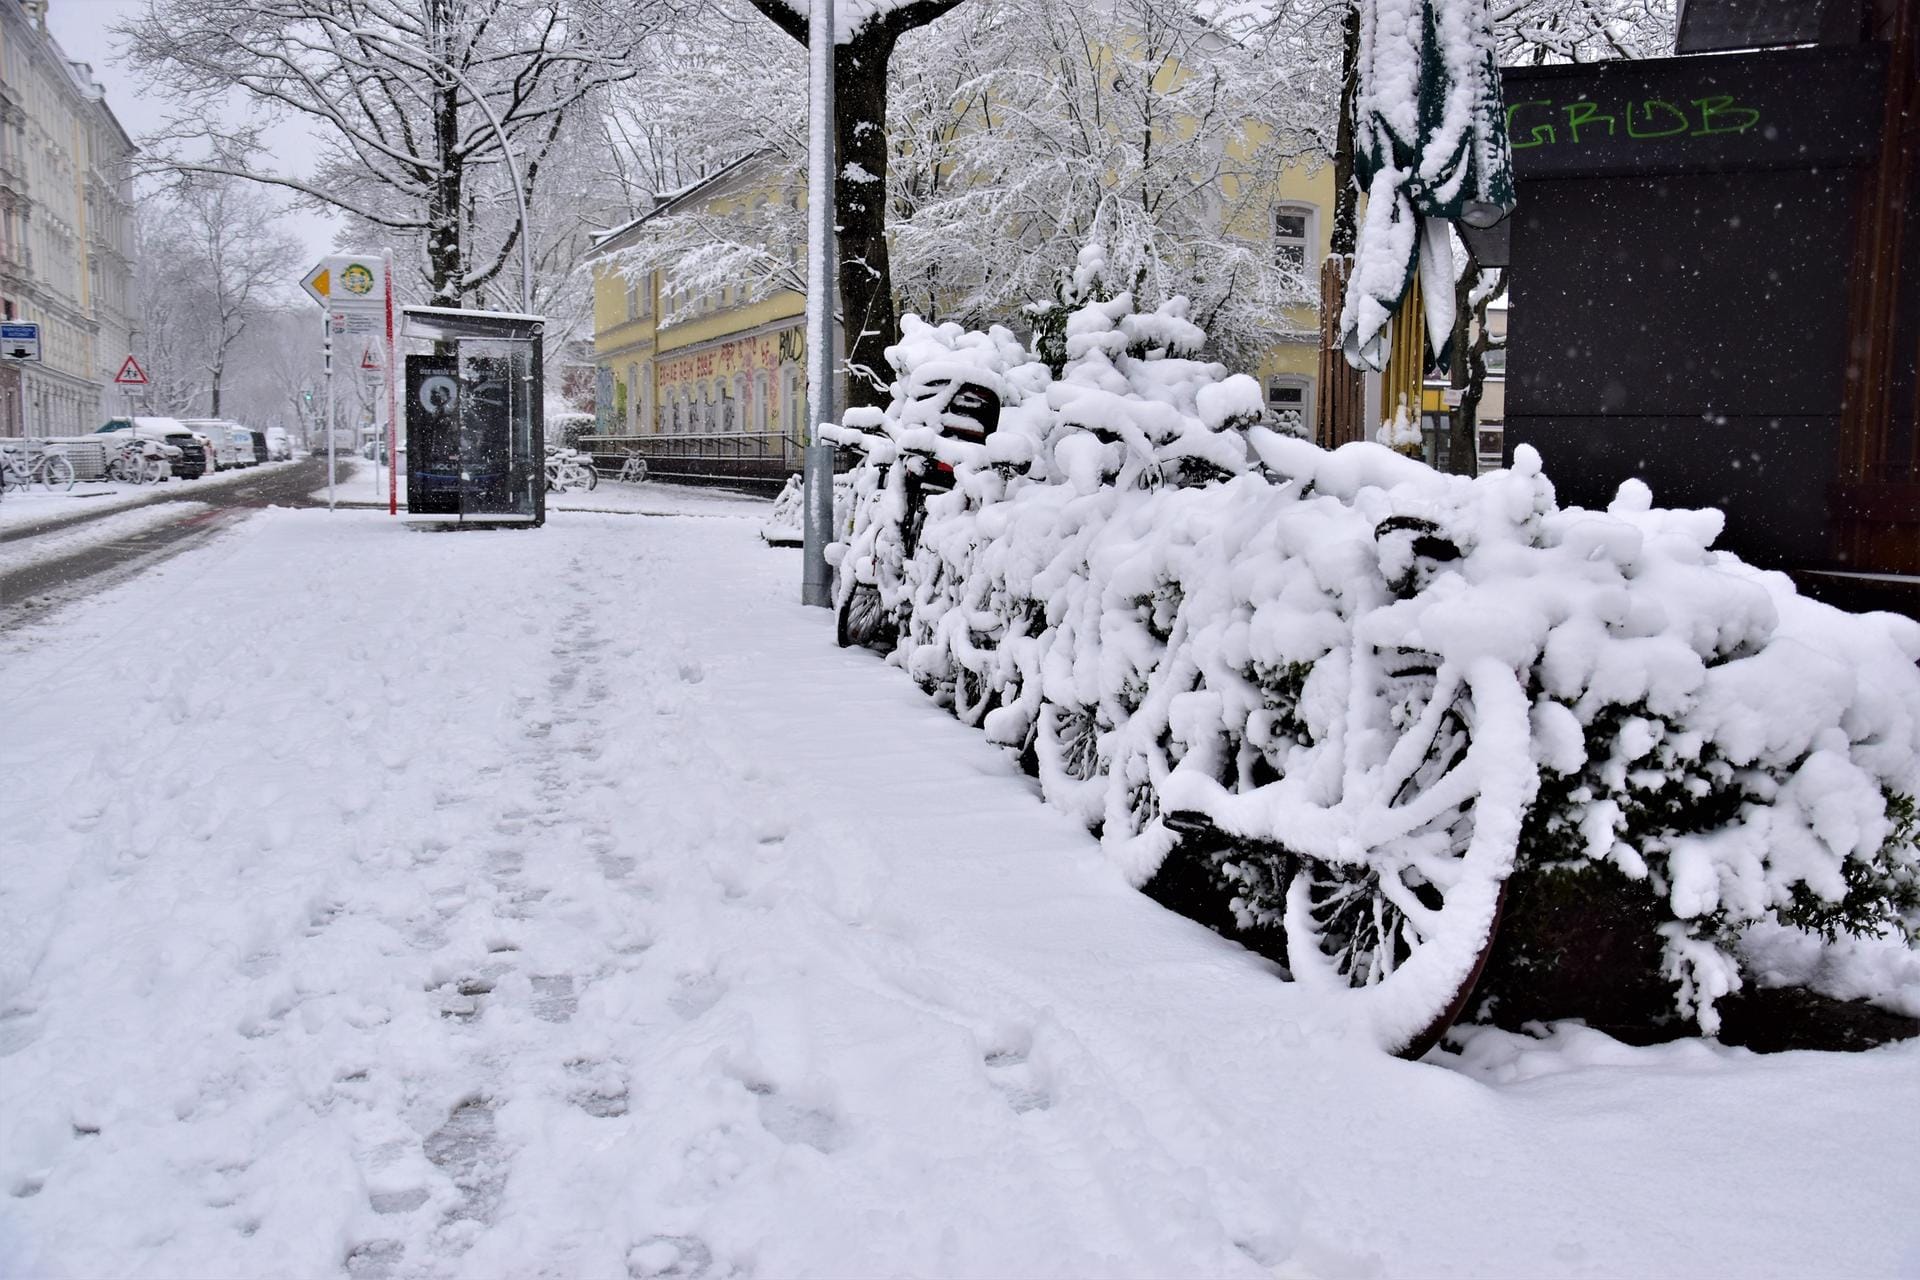 Verschneite Fahrräder am Straßenrand: In den Seitenstraßen von Ottensen war am Morgen kein Durchkommen für Zweiräder.